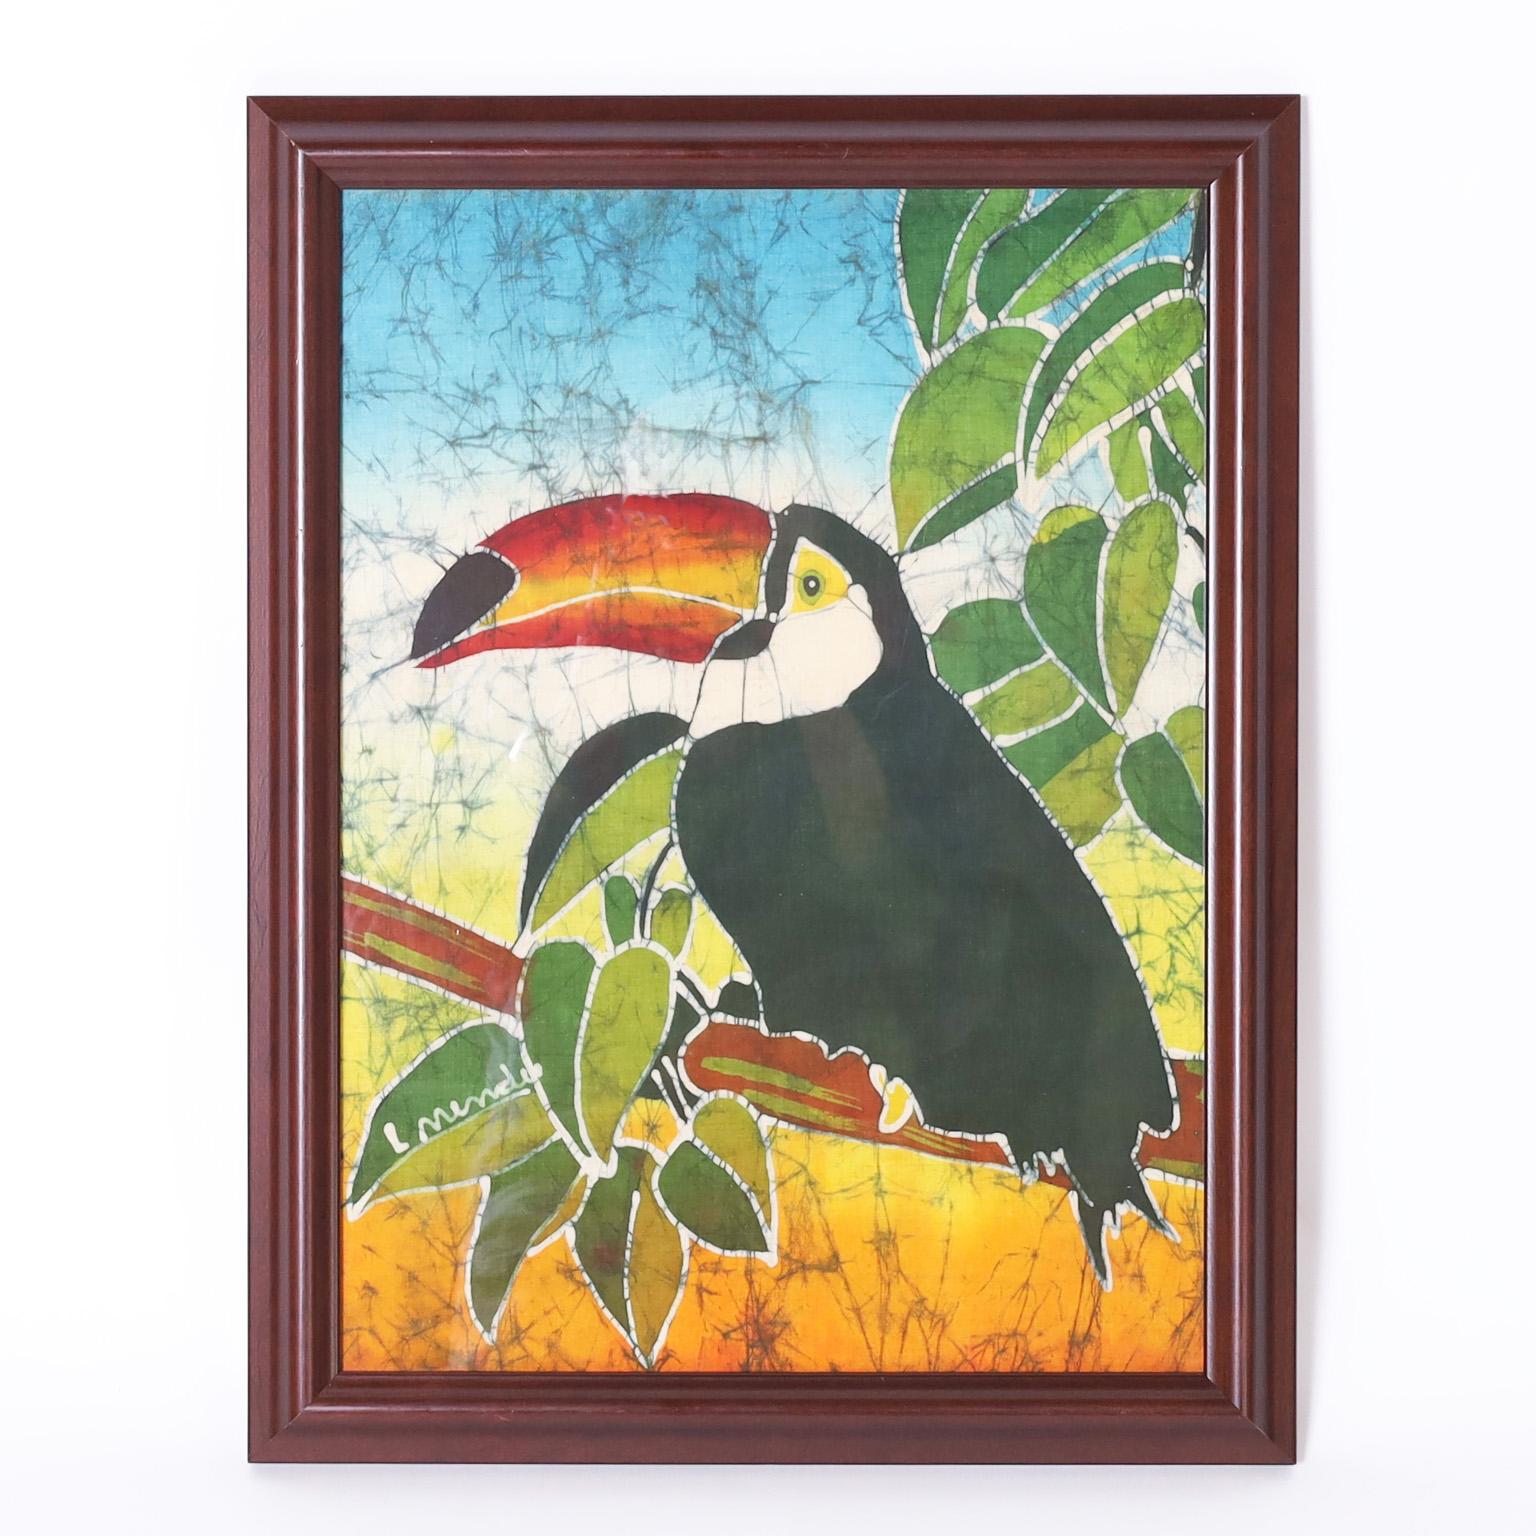 Batik Artwork of a Toucan